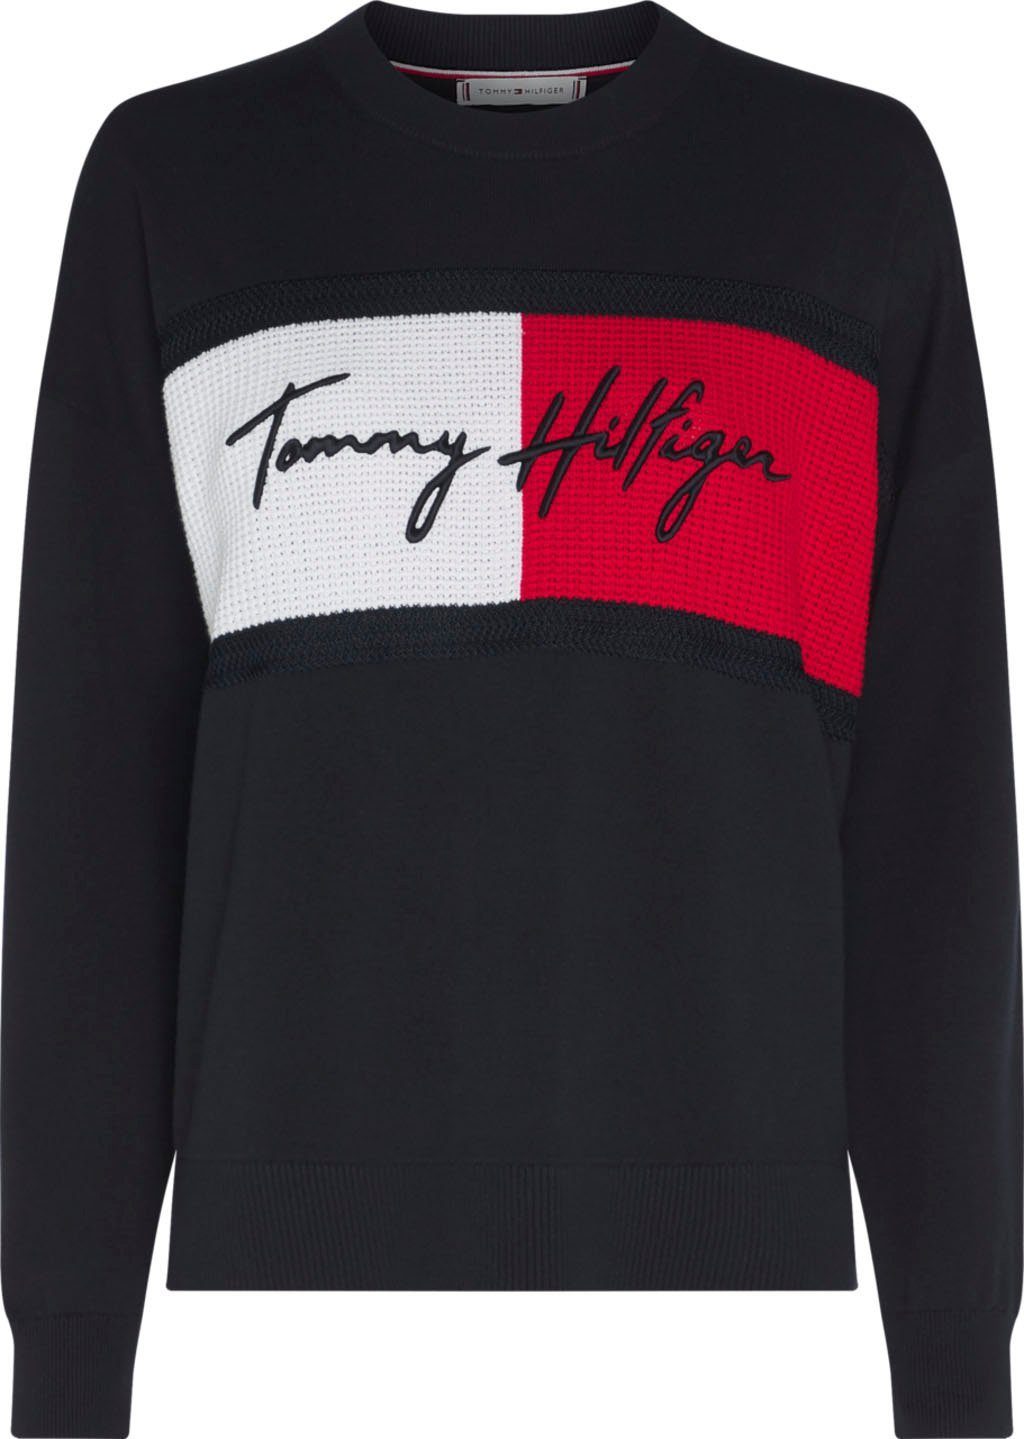 Tommy Hilfiger Damen Sweatshirts online kaufen | OTTO